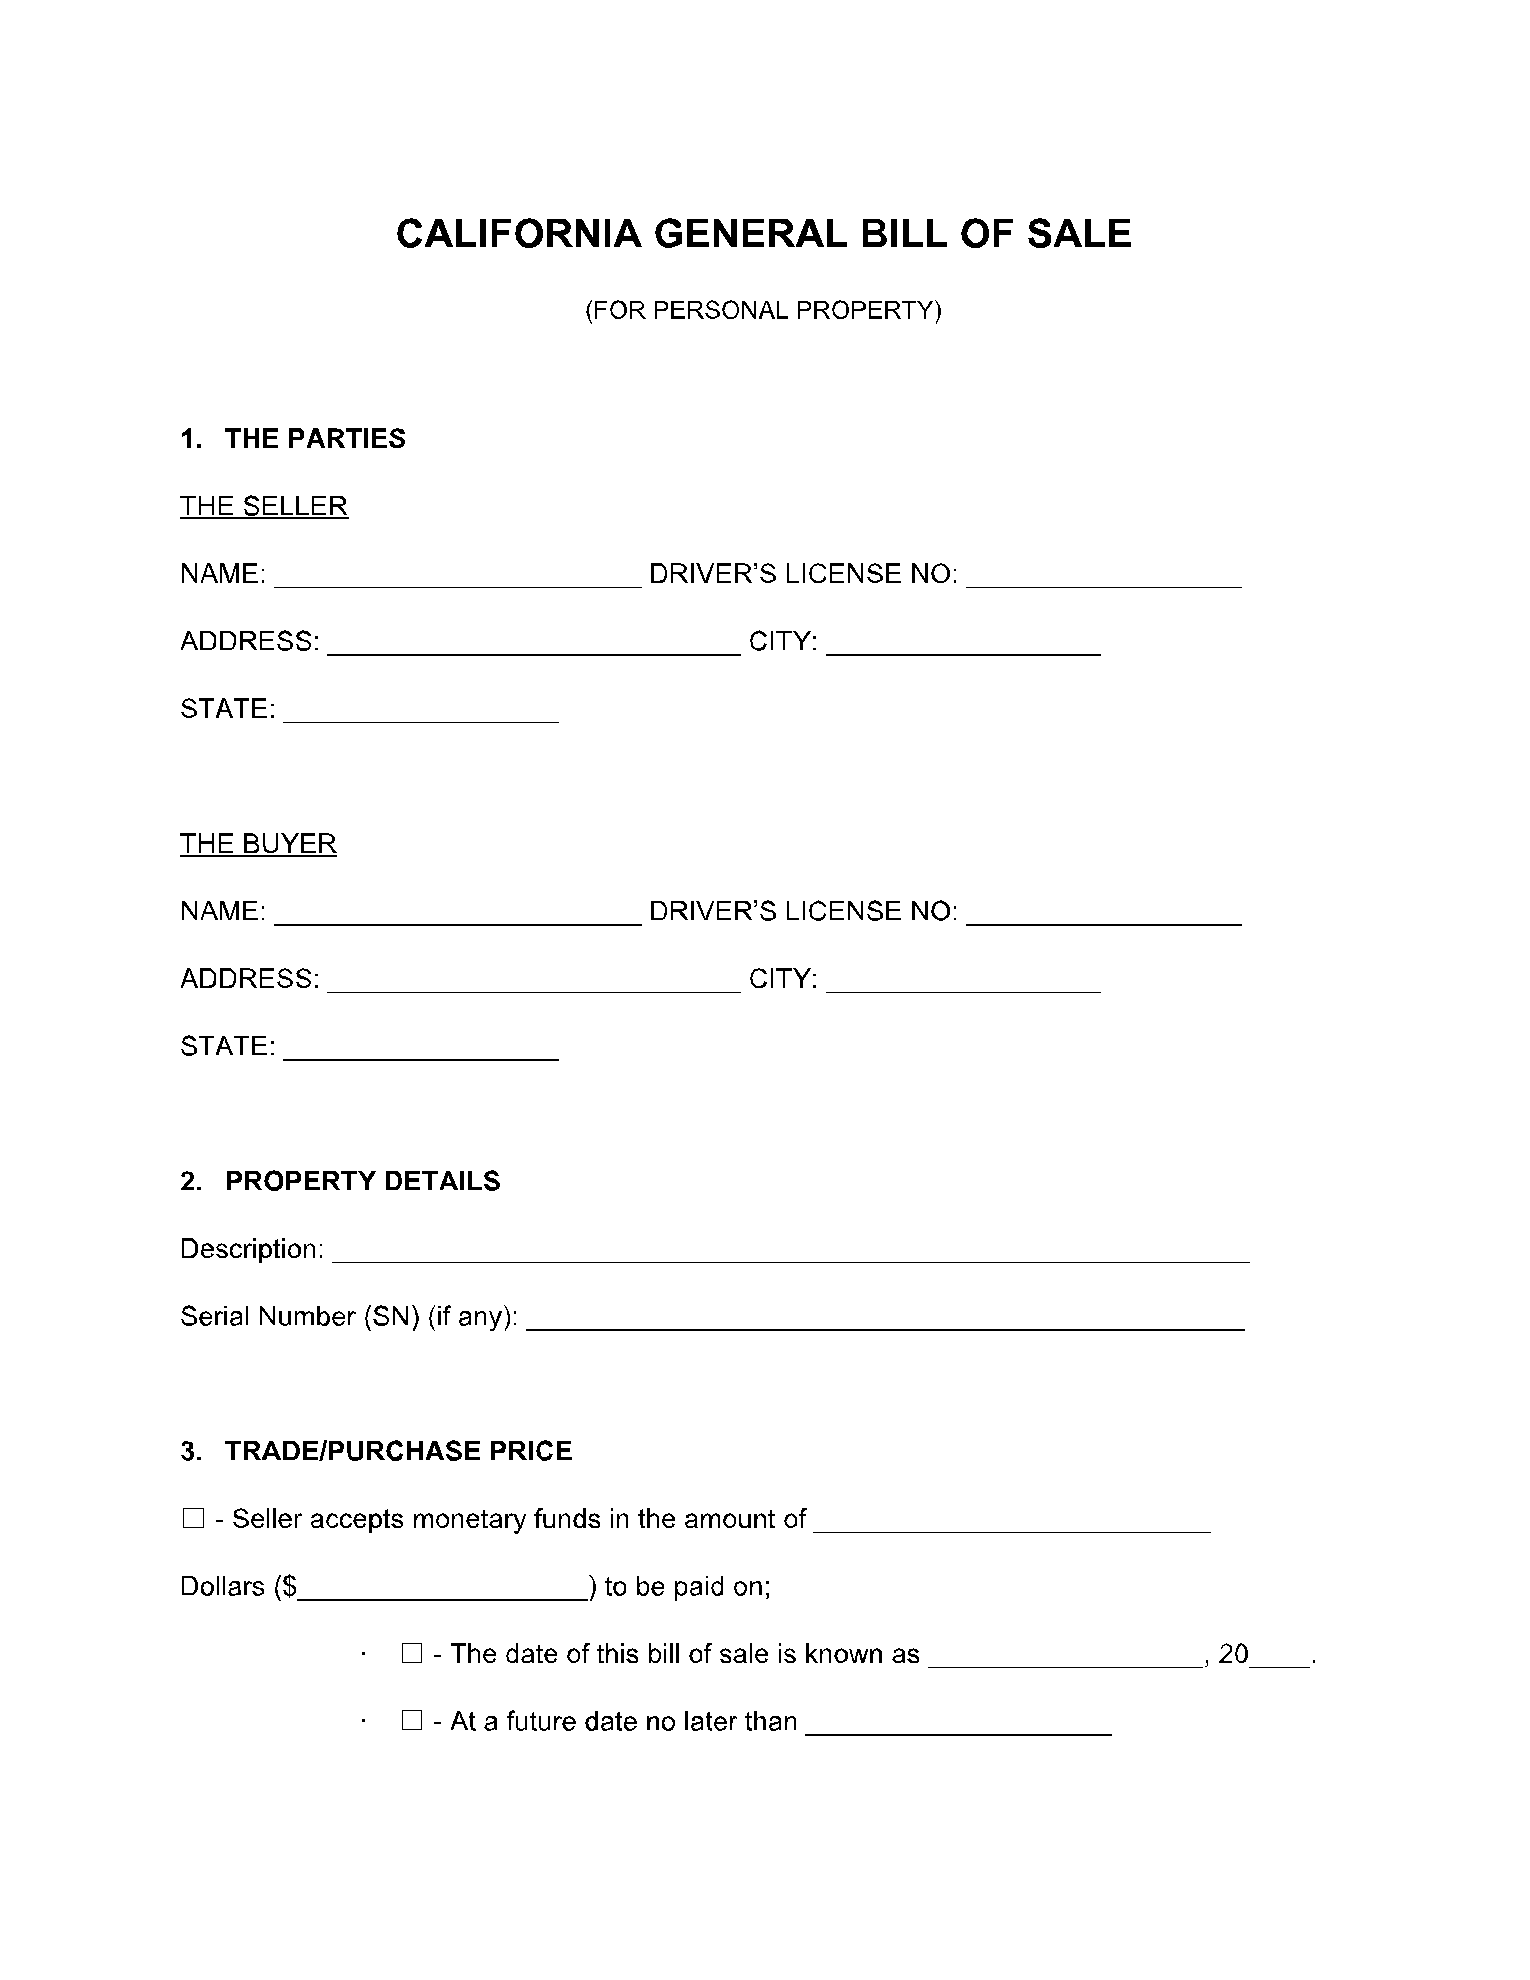 California Bill of Sale